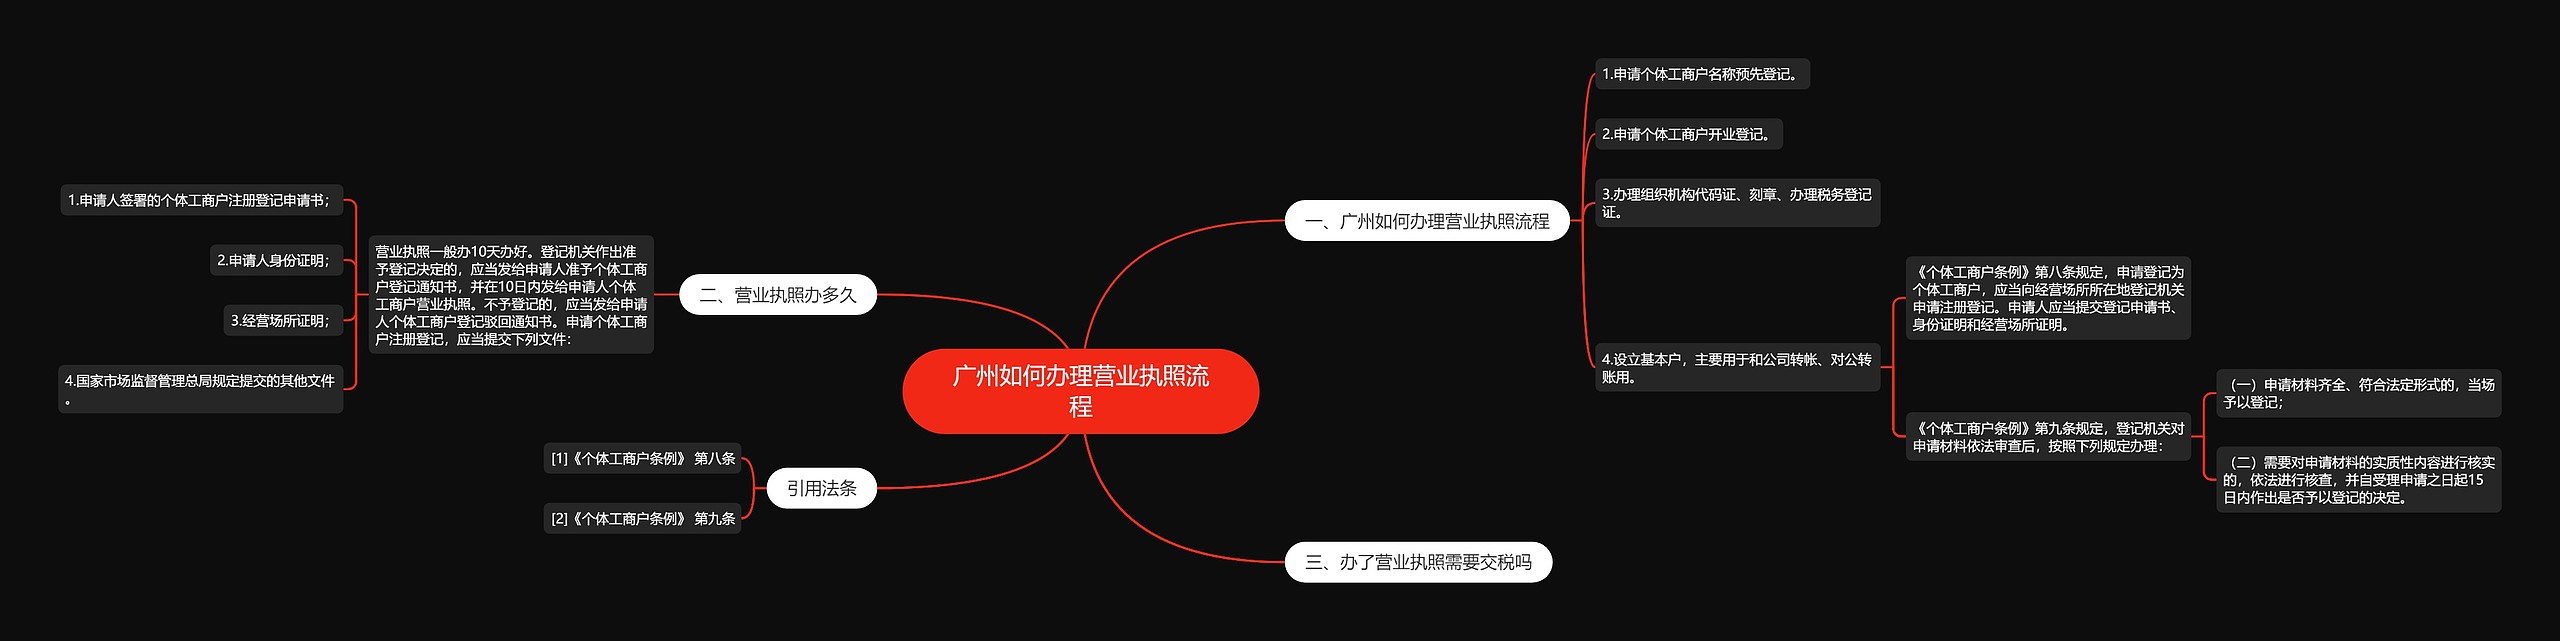 广州如何办理营业执照流程思维导图